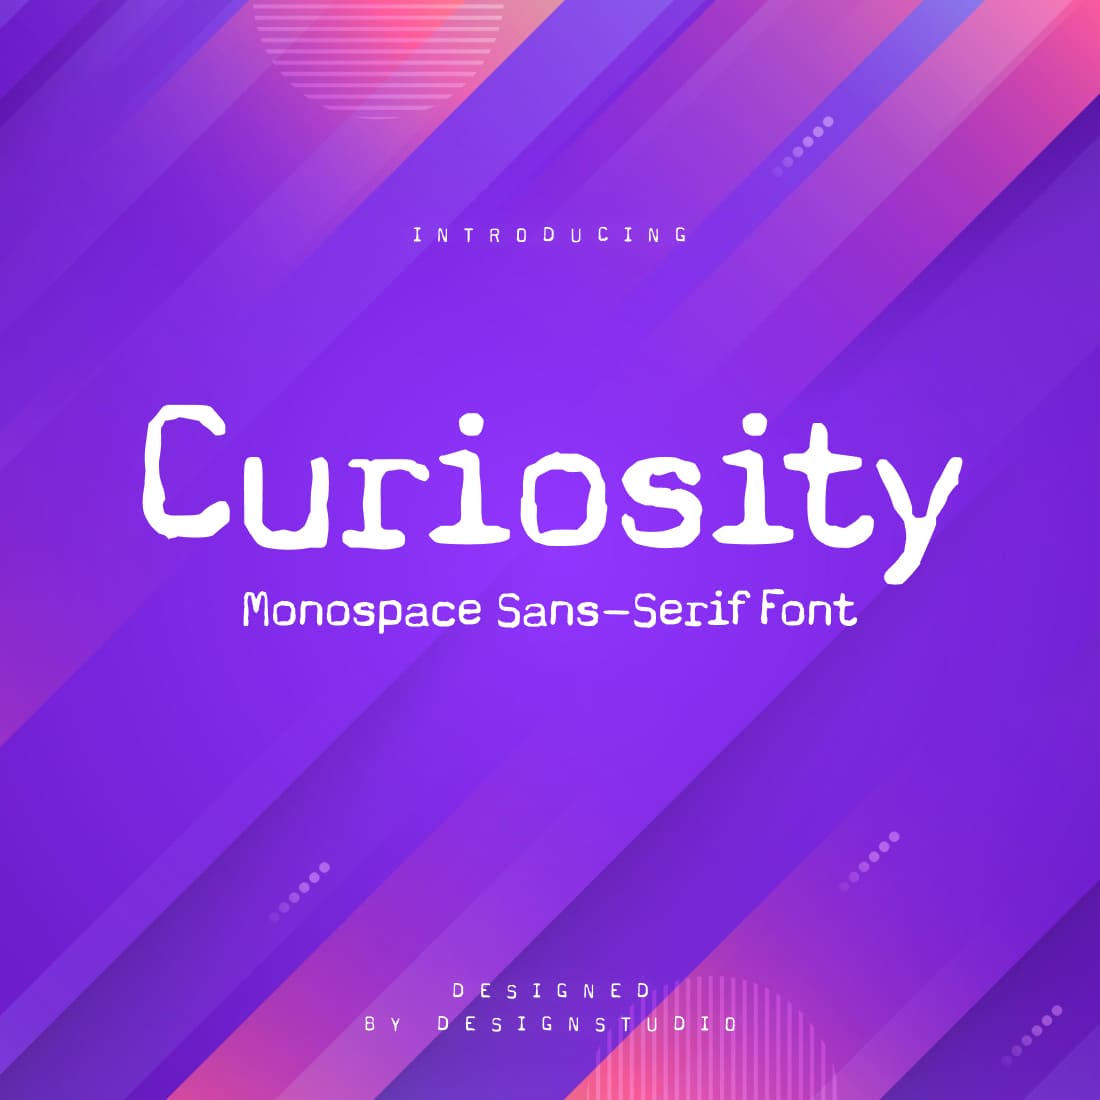 Curiosity Monospace Sans-Serif Font main cover.